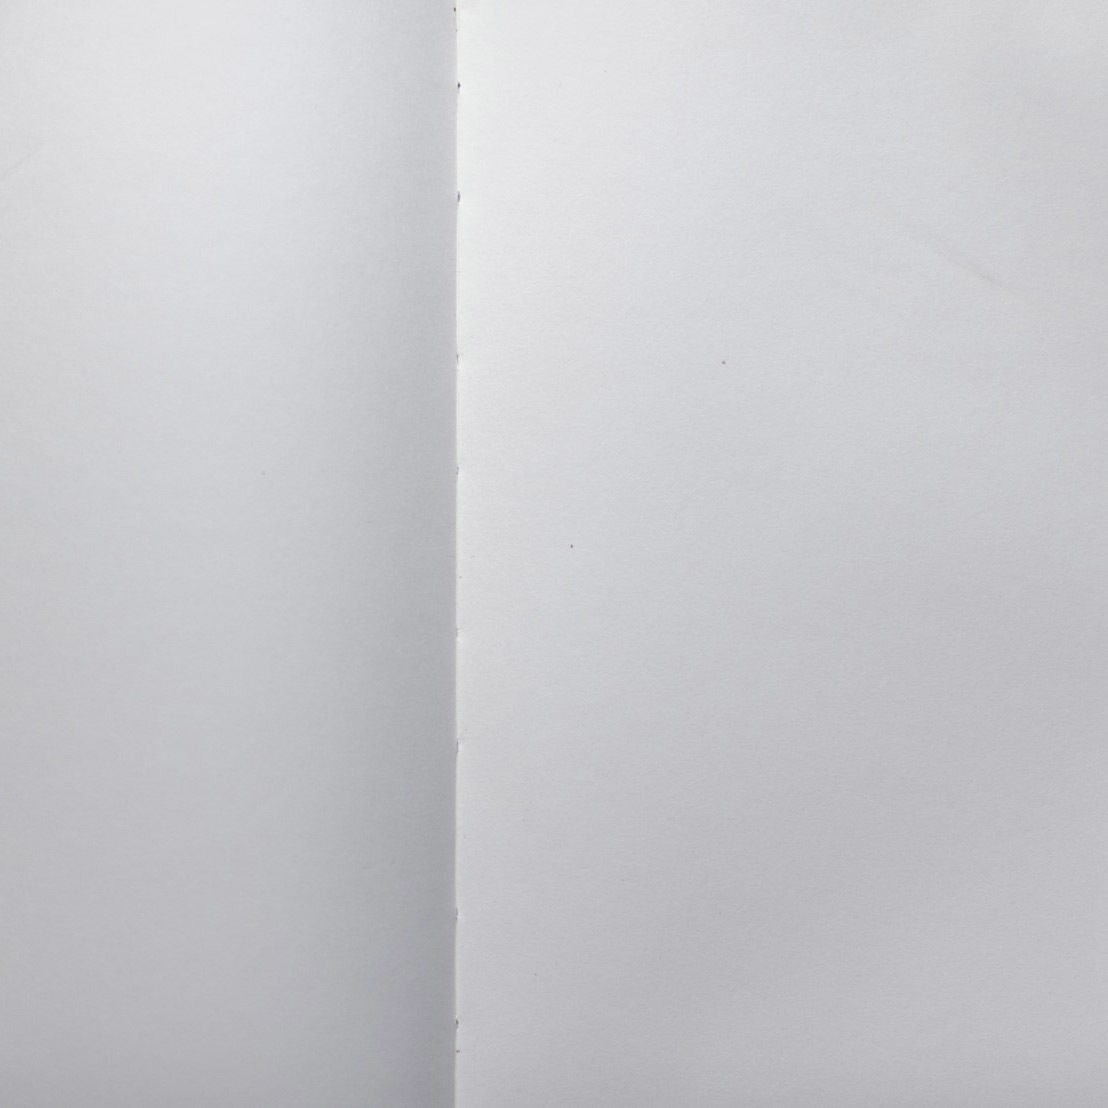 Schmuckbild: ein aufgeschlagenes Buch, die Seiten sind leer